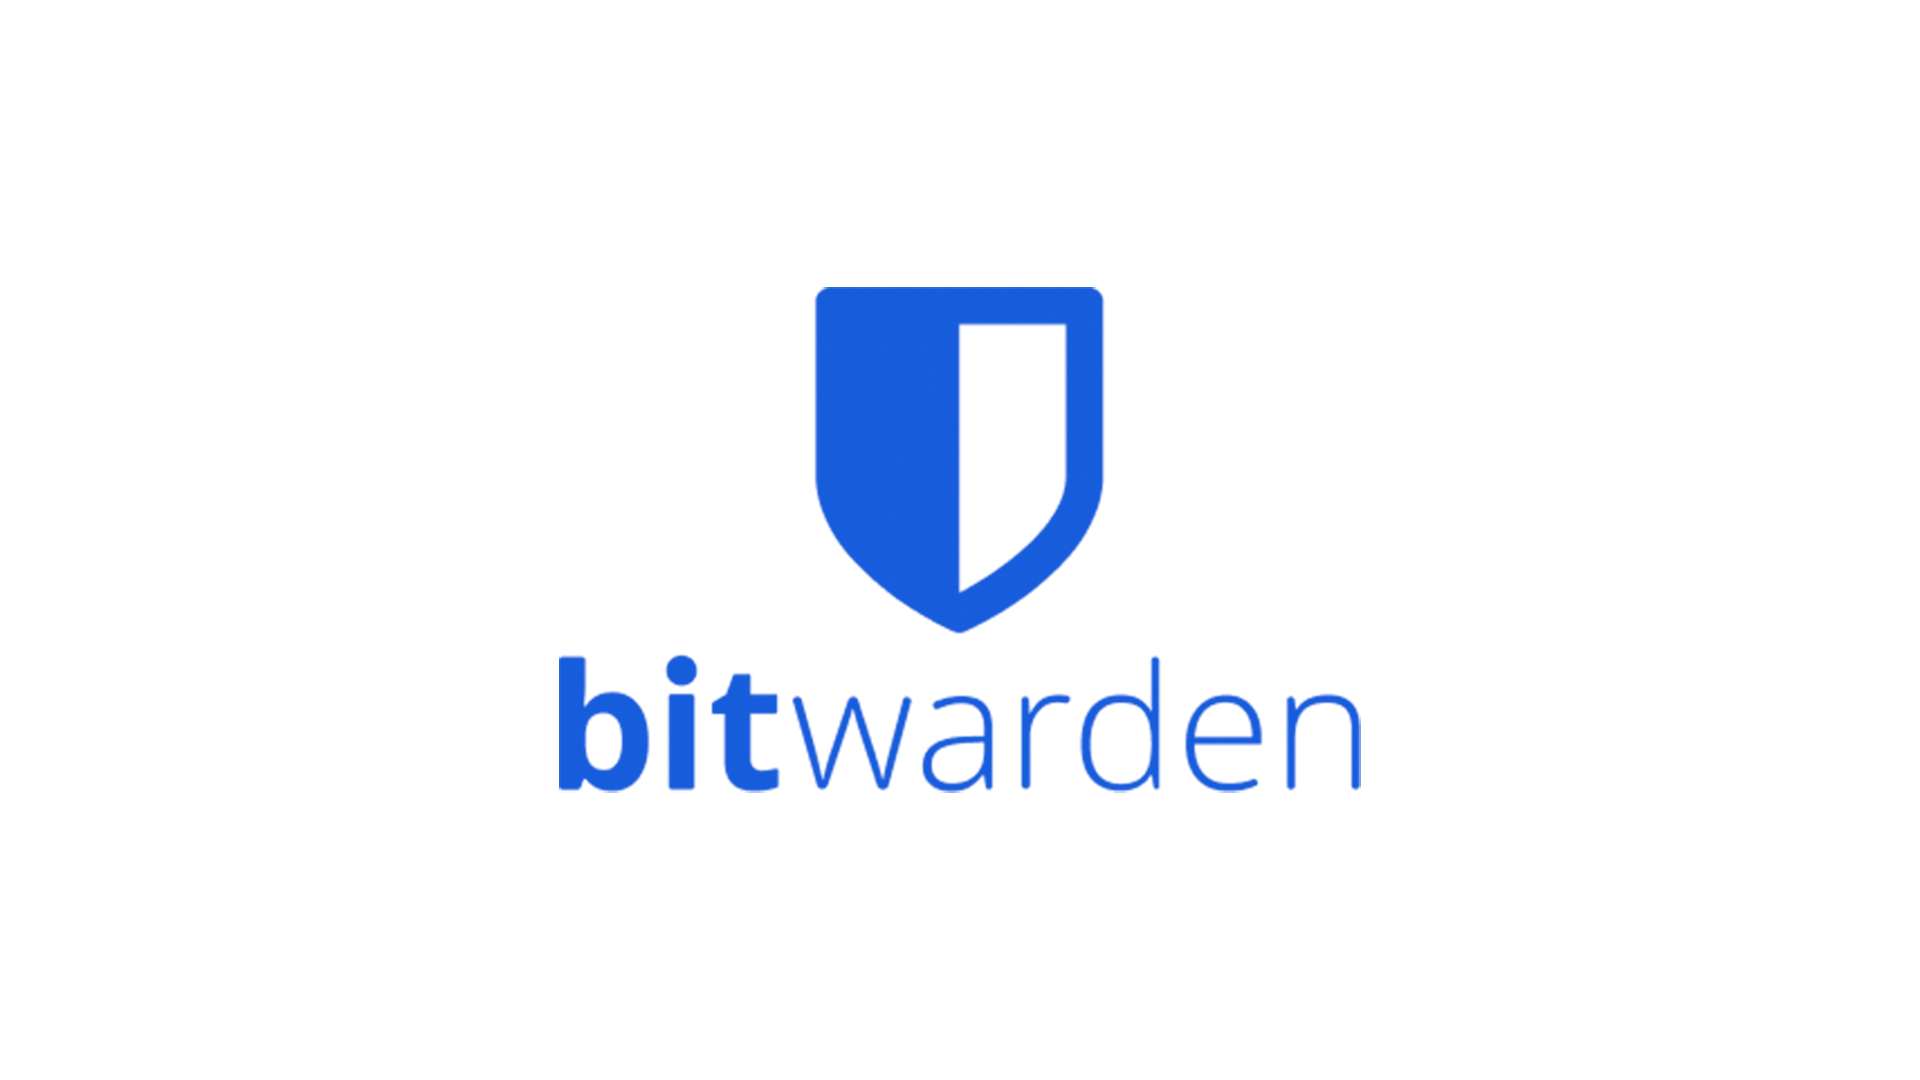 bitwarden-logo-on-a-white-background-1